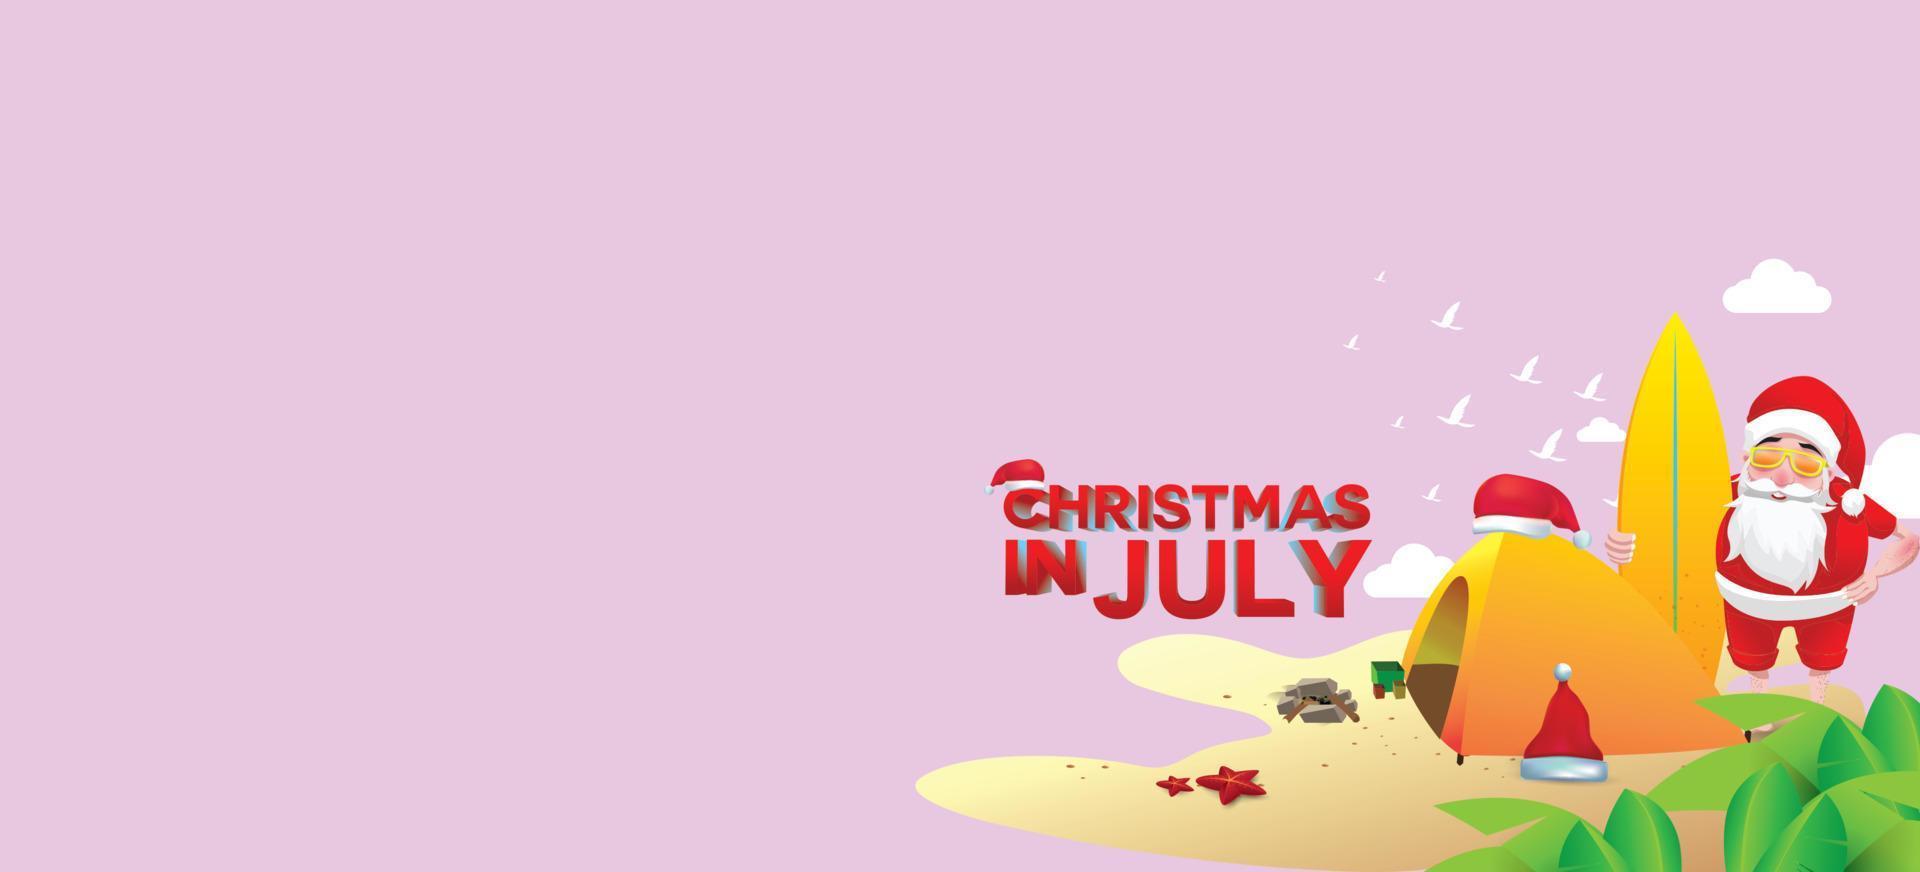 Kerstmis in juni, juli, augustus, voor poster, marketing, reclame, zomerverkoop, wenskaart. kerstman in de zomer met kopieerruimte voor tekst vector